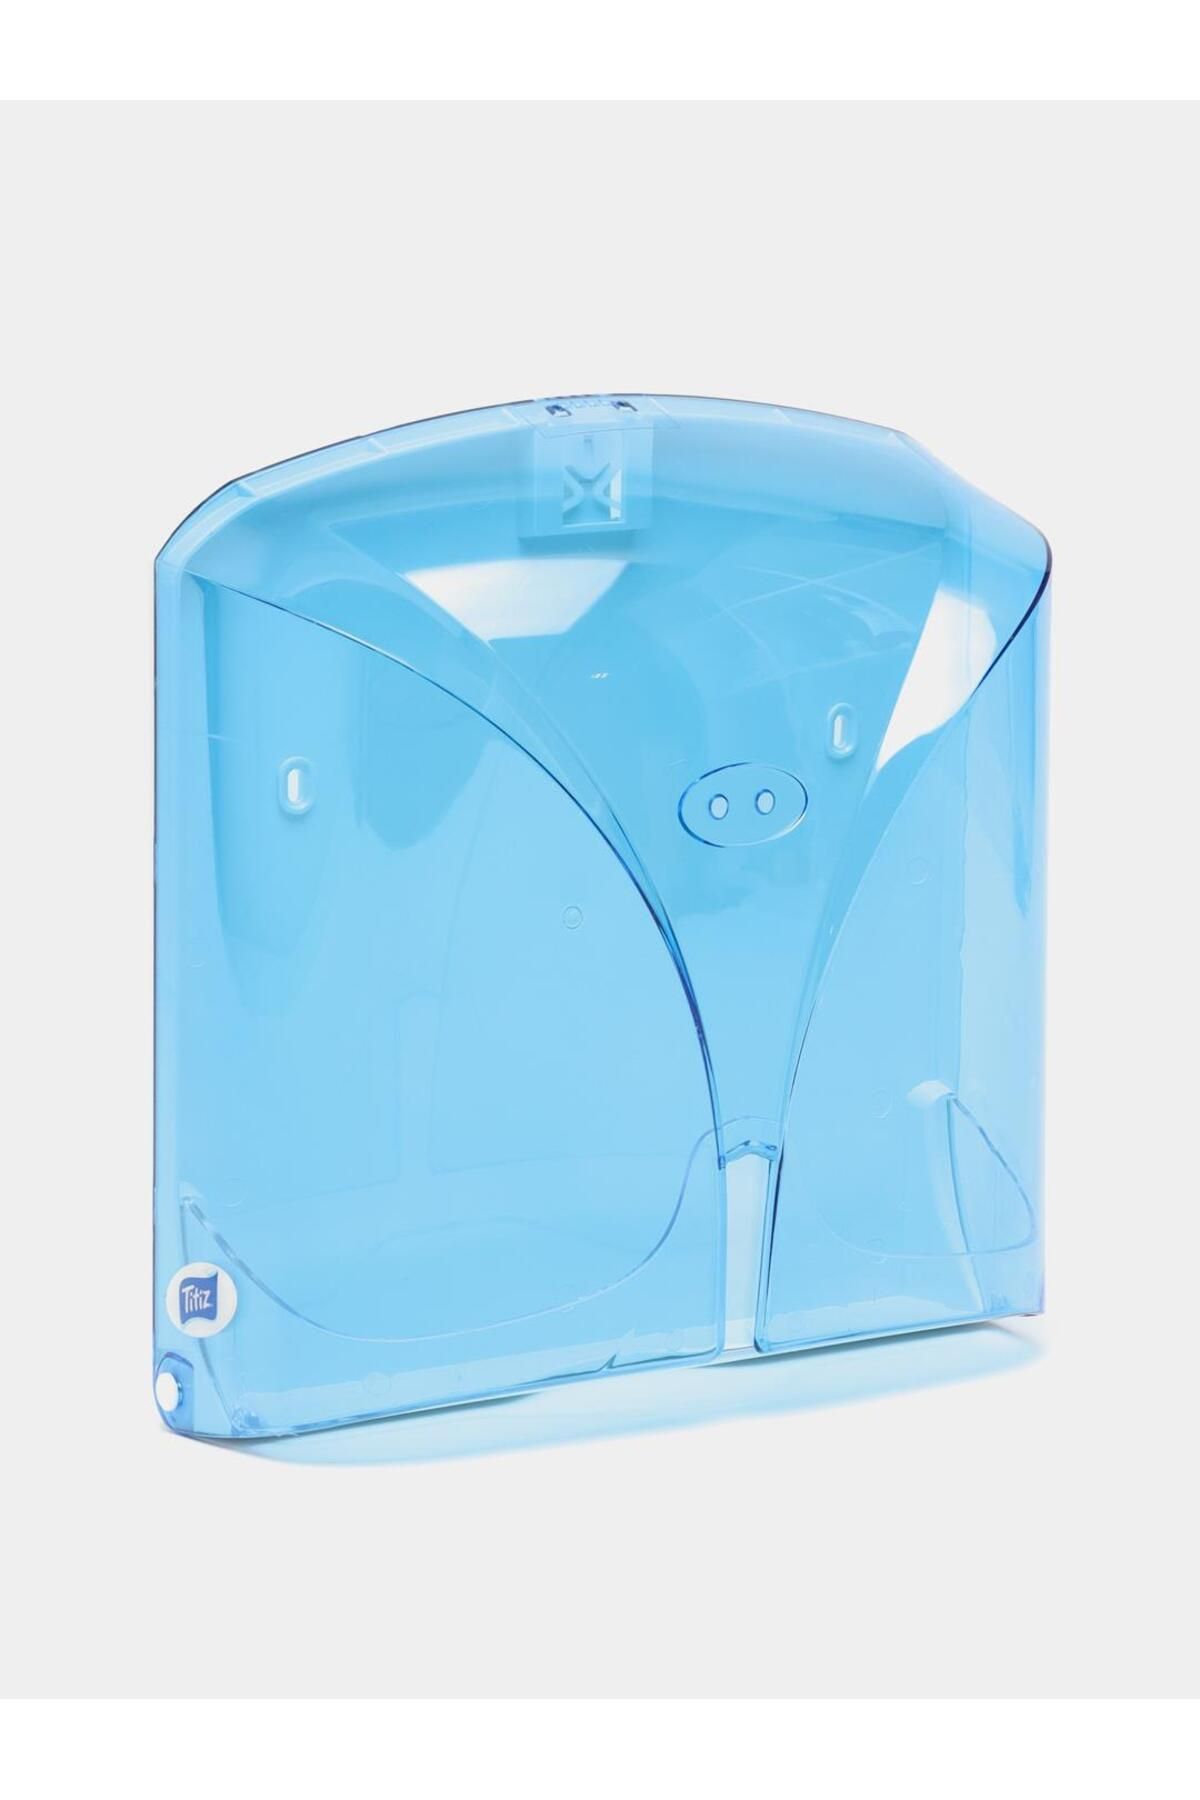 Titiz Tp-267 Z Katlama Kağıt Havlu Dispenseri Aparatı - Şeffaf Mavi - Plastik - 28 Cm. - 1 Adet